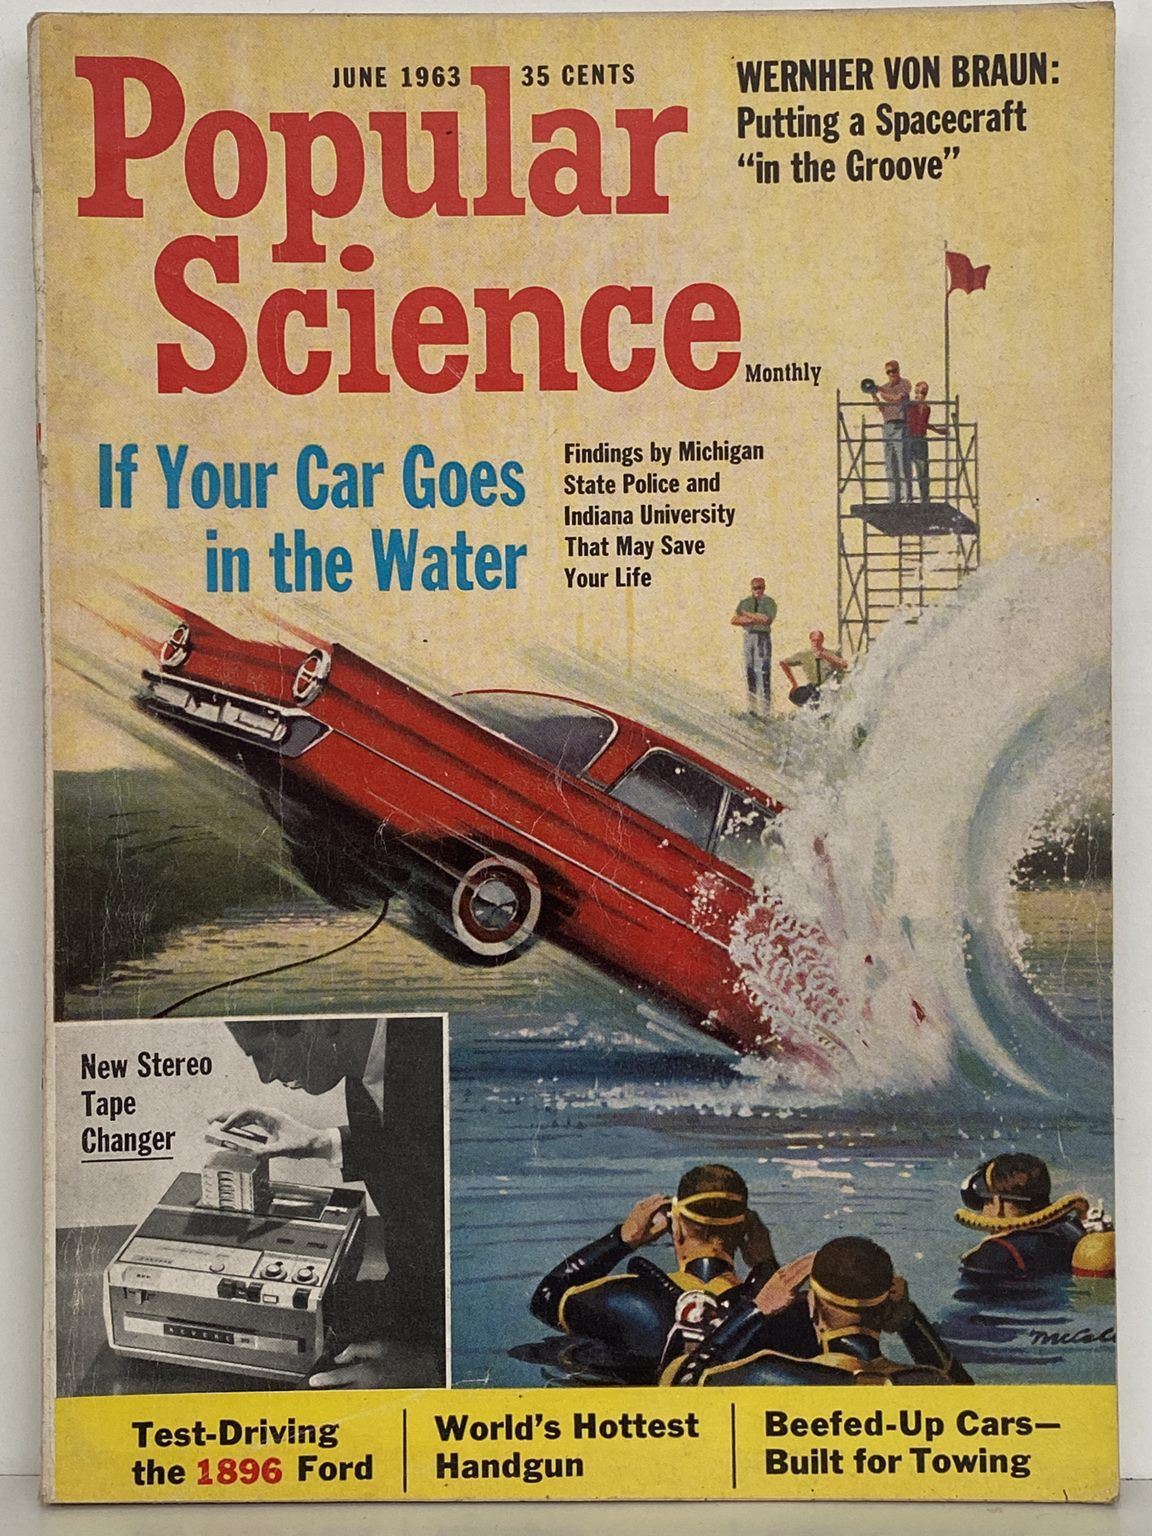 VINTAGE MAGAZINE: Popular Science, Vol. 182, No. 6 - June 1963